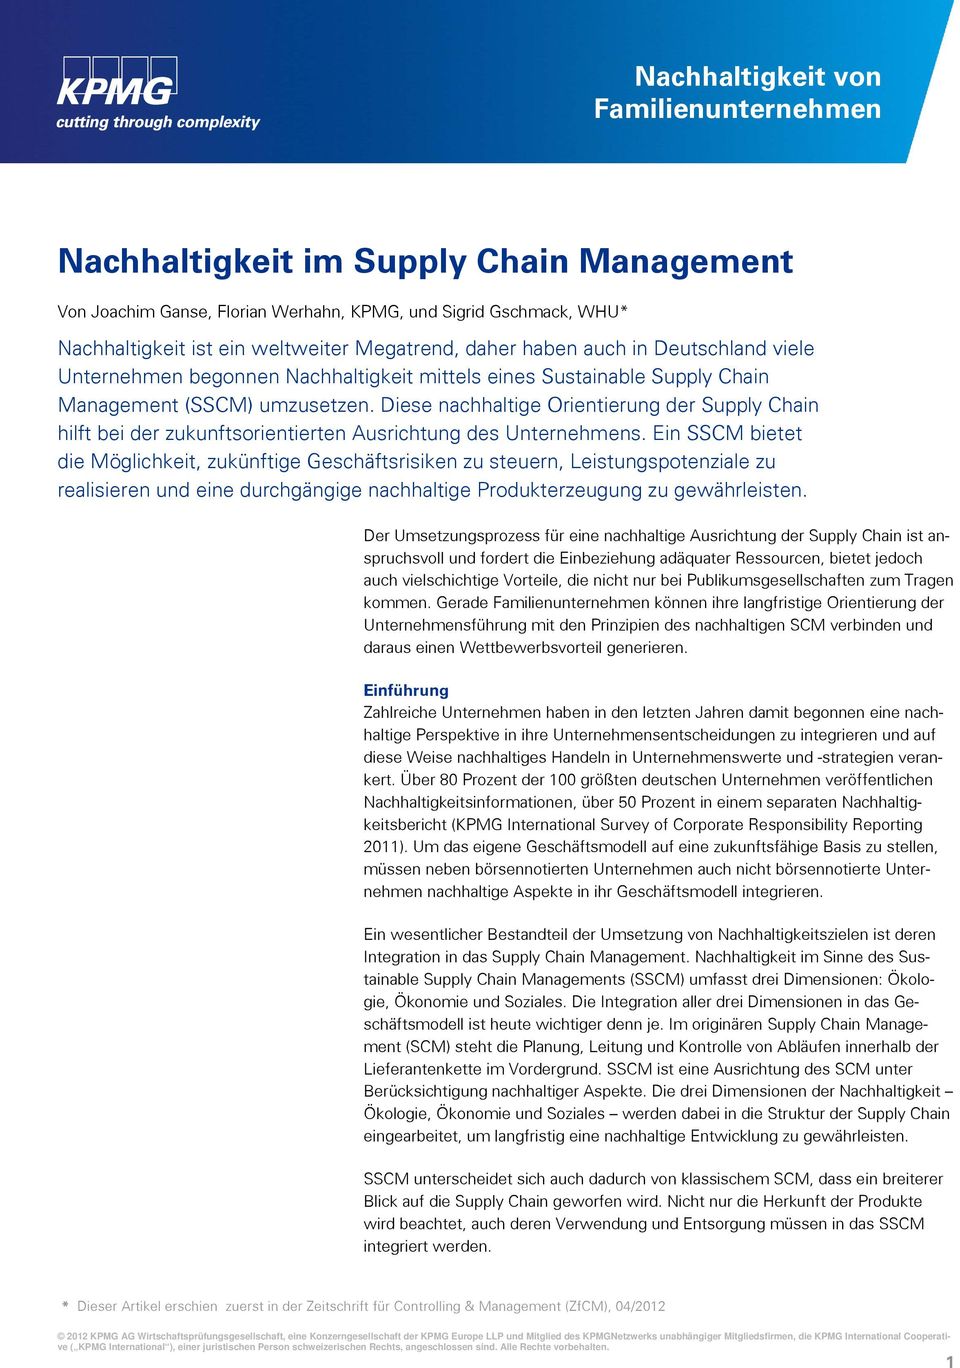 Diese nachhaltige Orientierung der Supply Chain hilft bei der zukunftsorientierten Ausrichtung des Unternehmens.